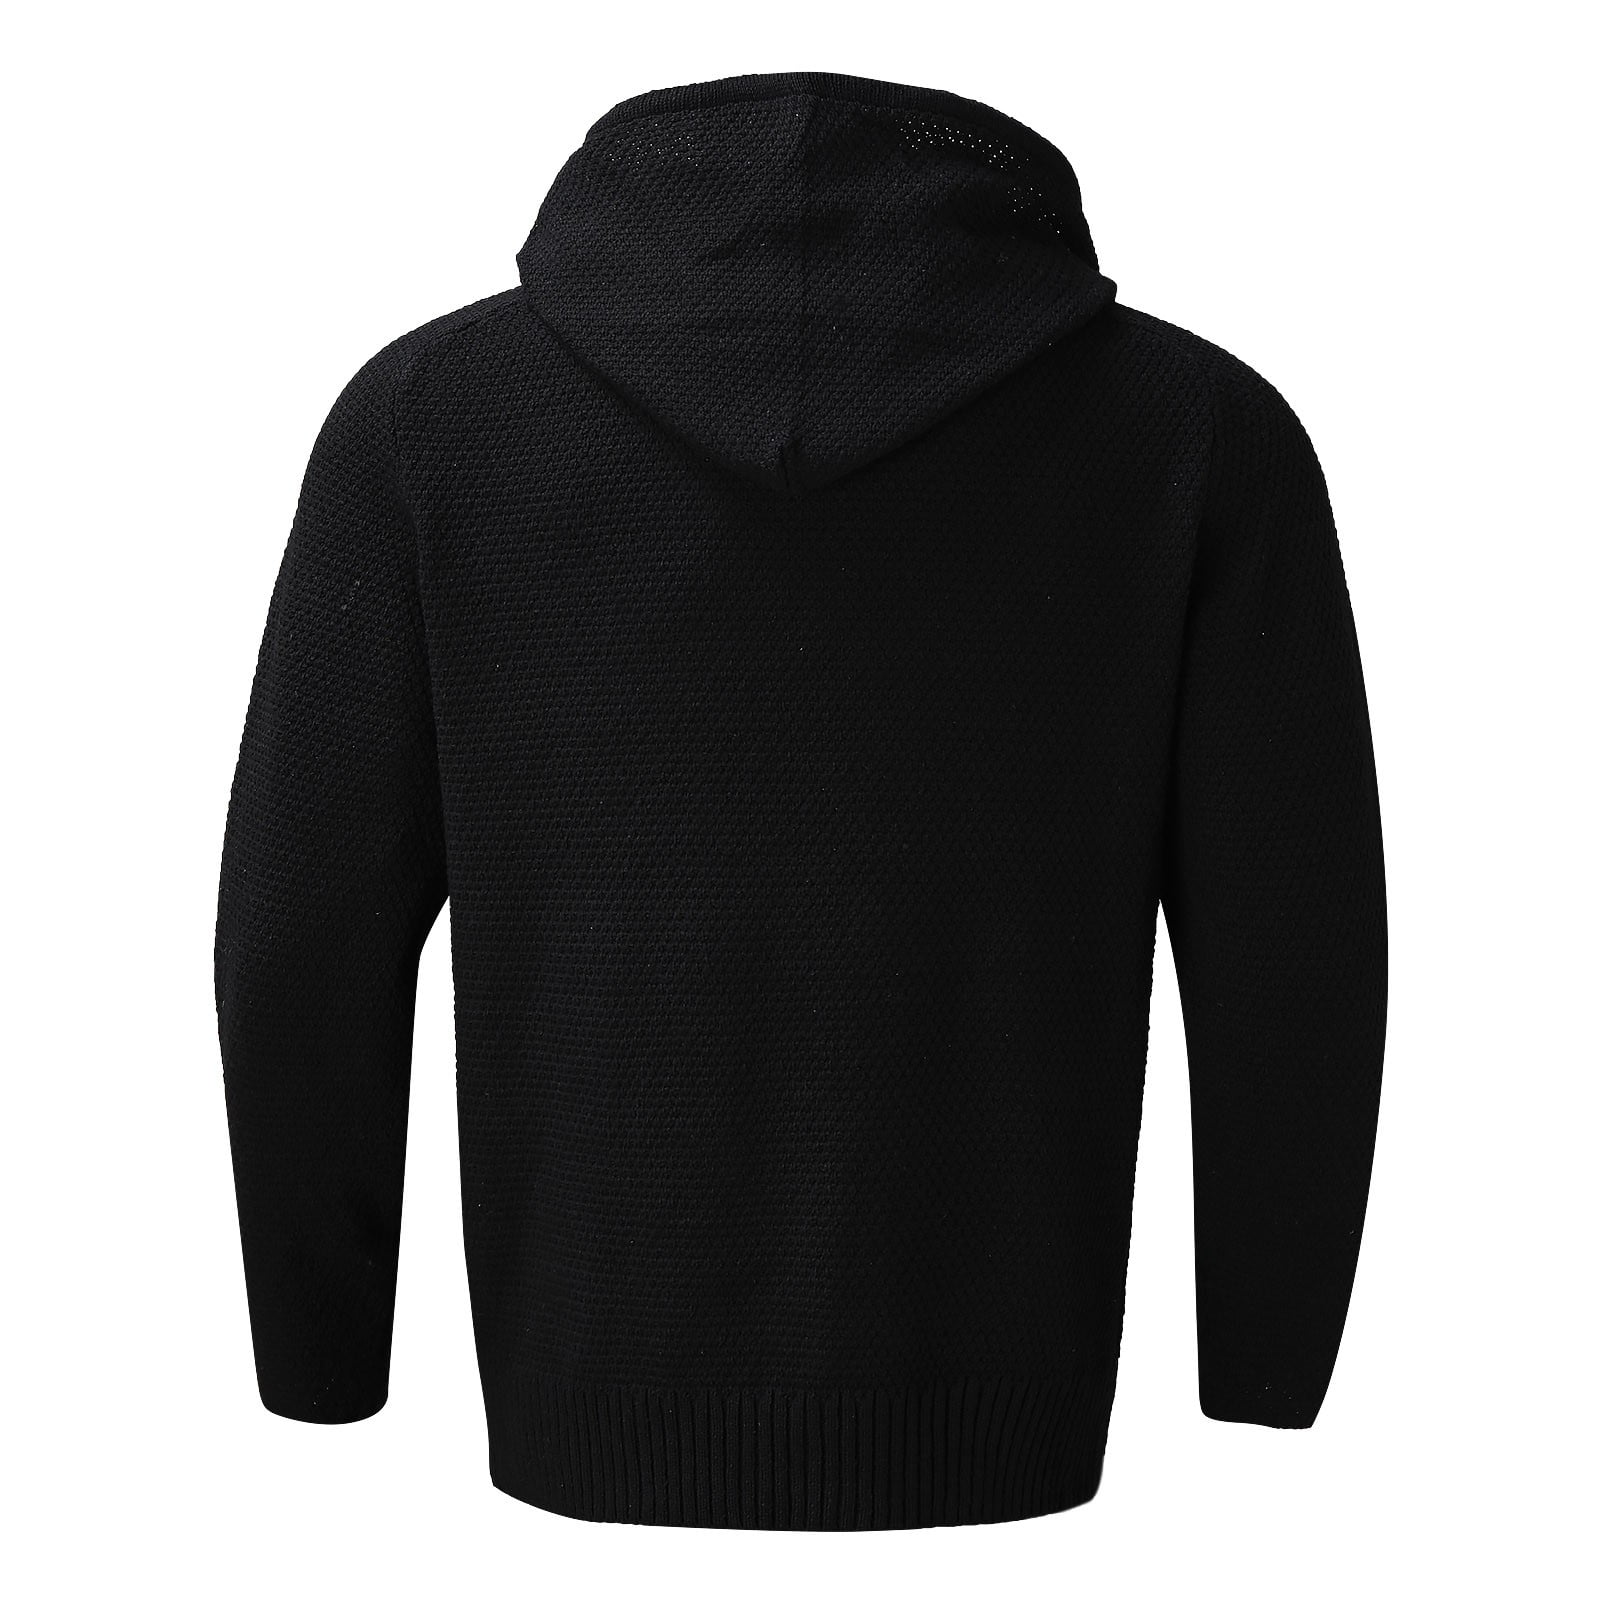 Aayomet Sweaters for Men Winter Sweater Jacket Fashion Zipper Slim Long ...